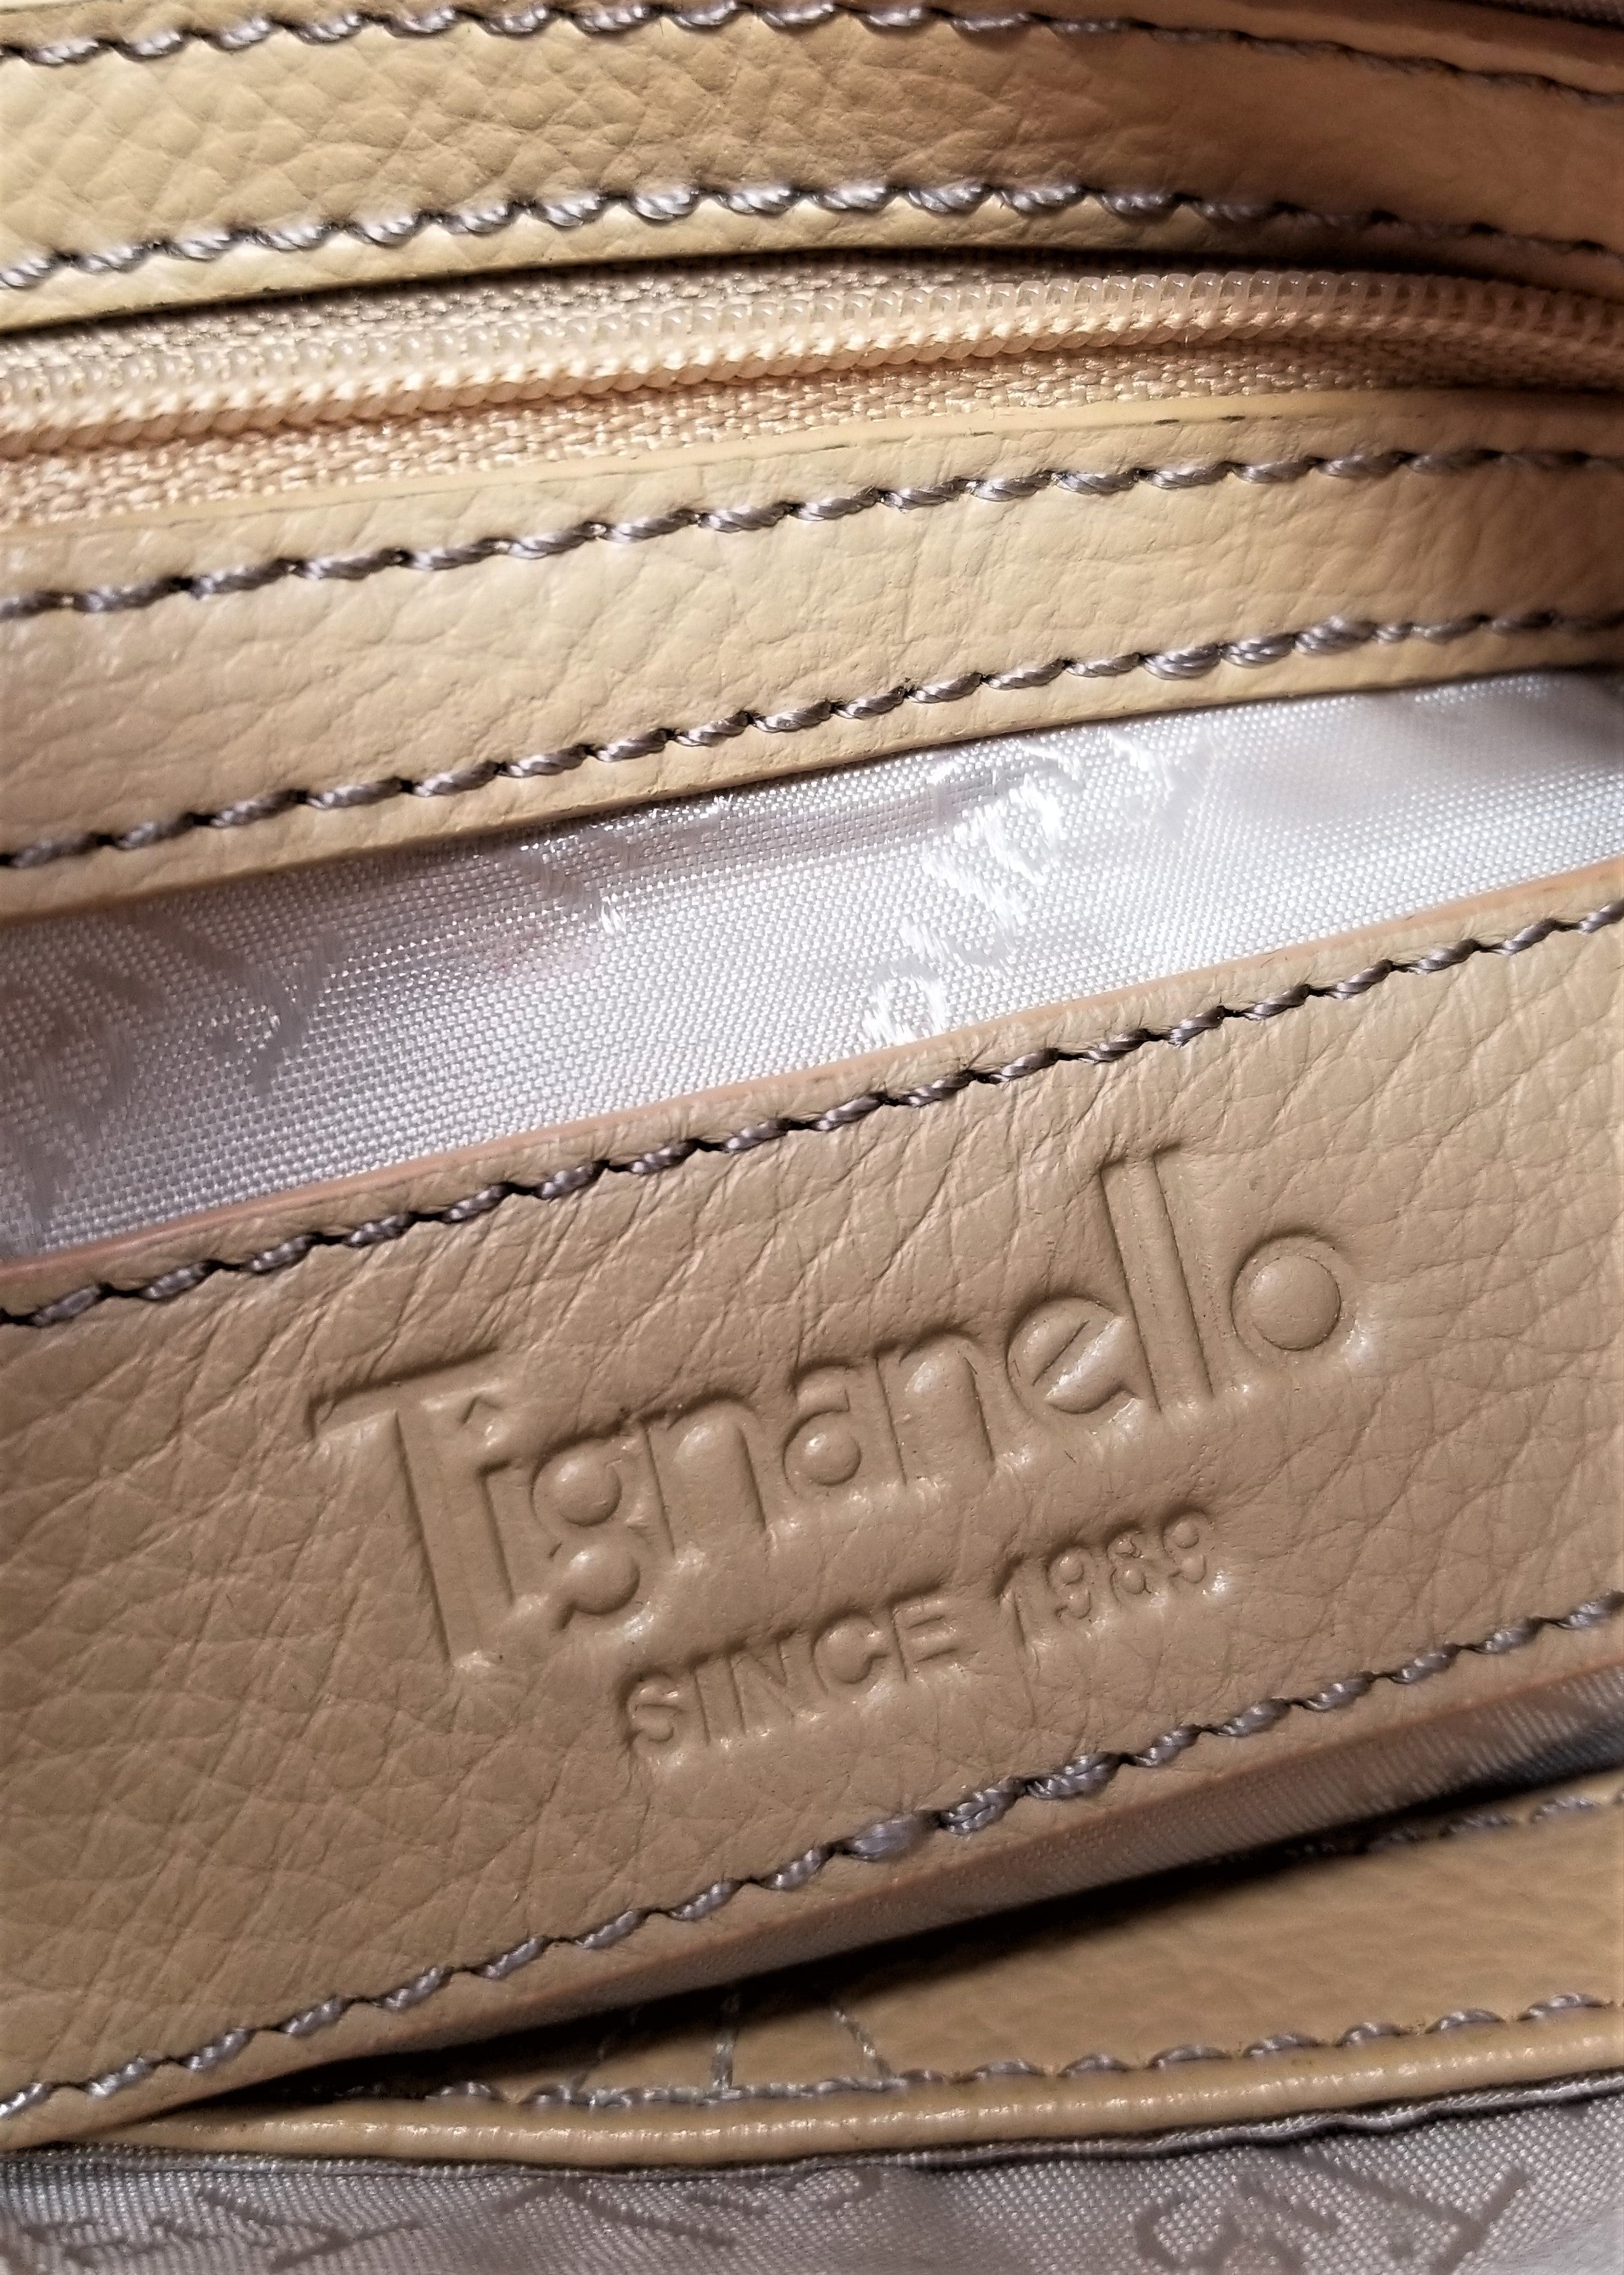 Tignanello Leather Purse Crossbody Tan & White